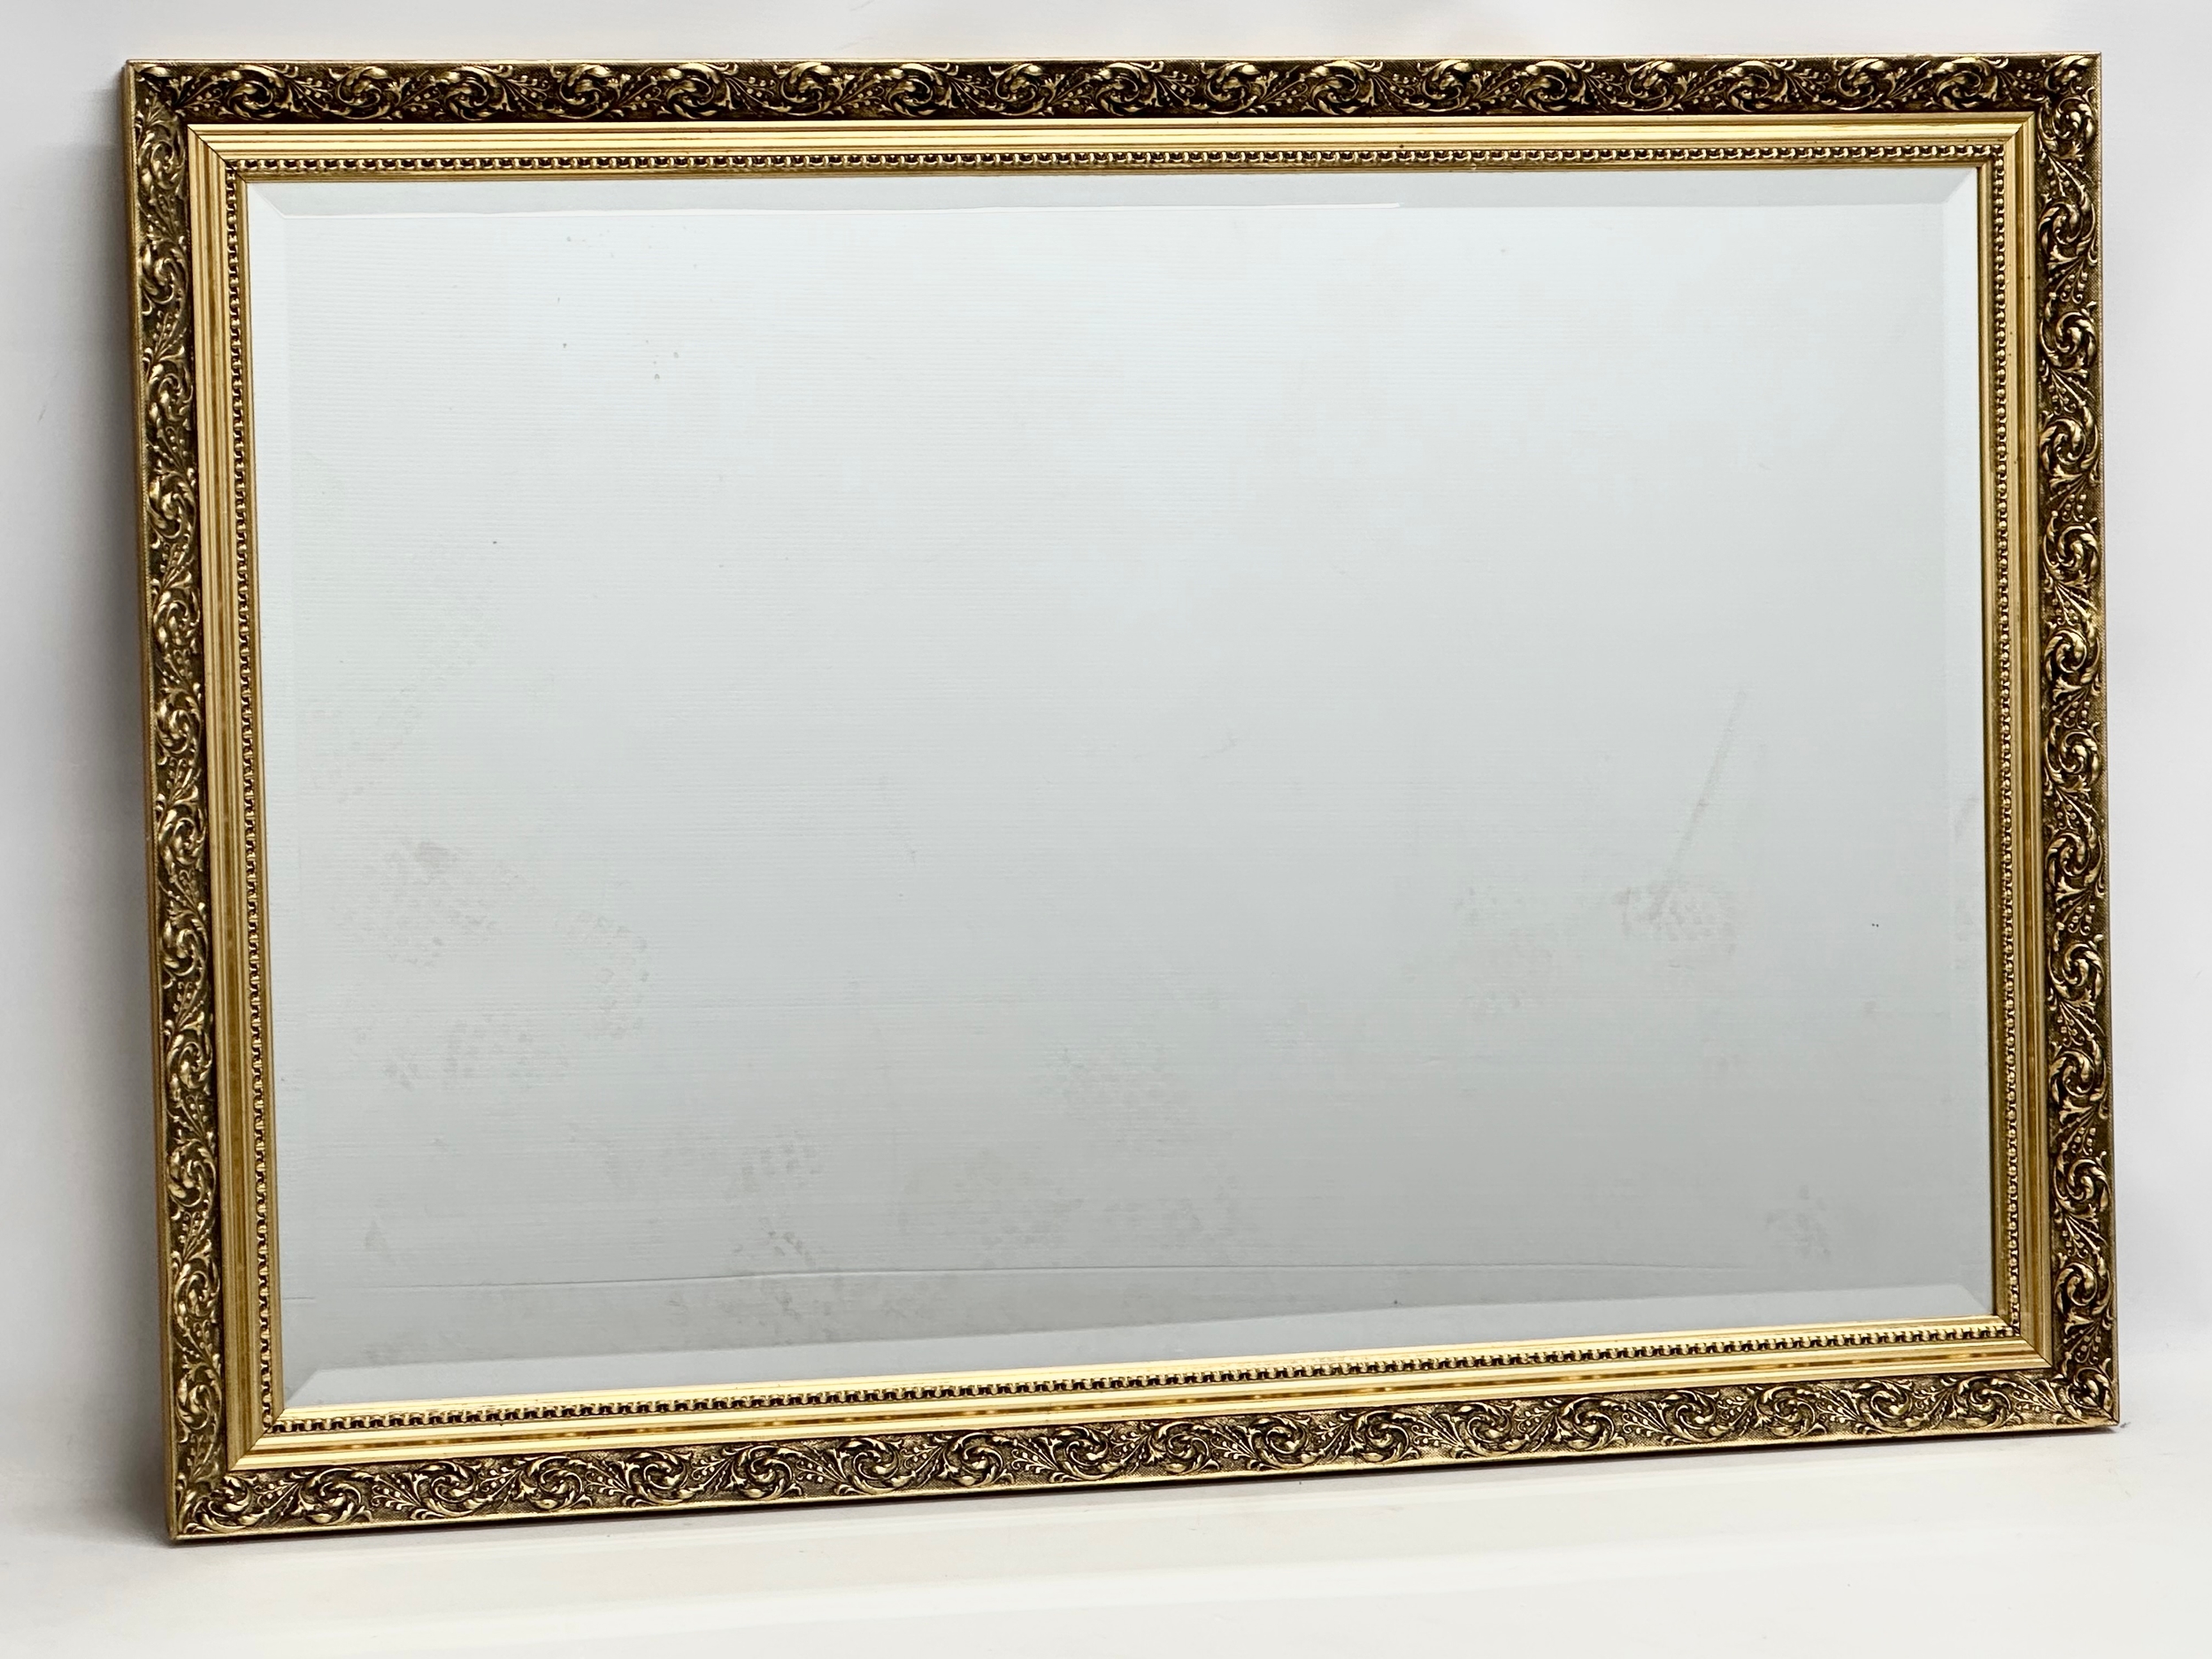 A large gilt framed mirror. 99x70cm